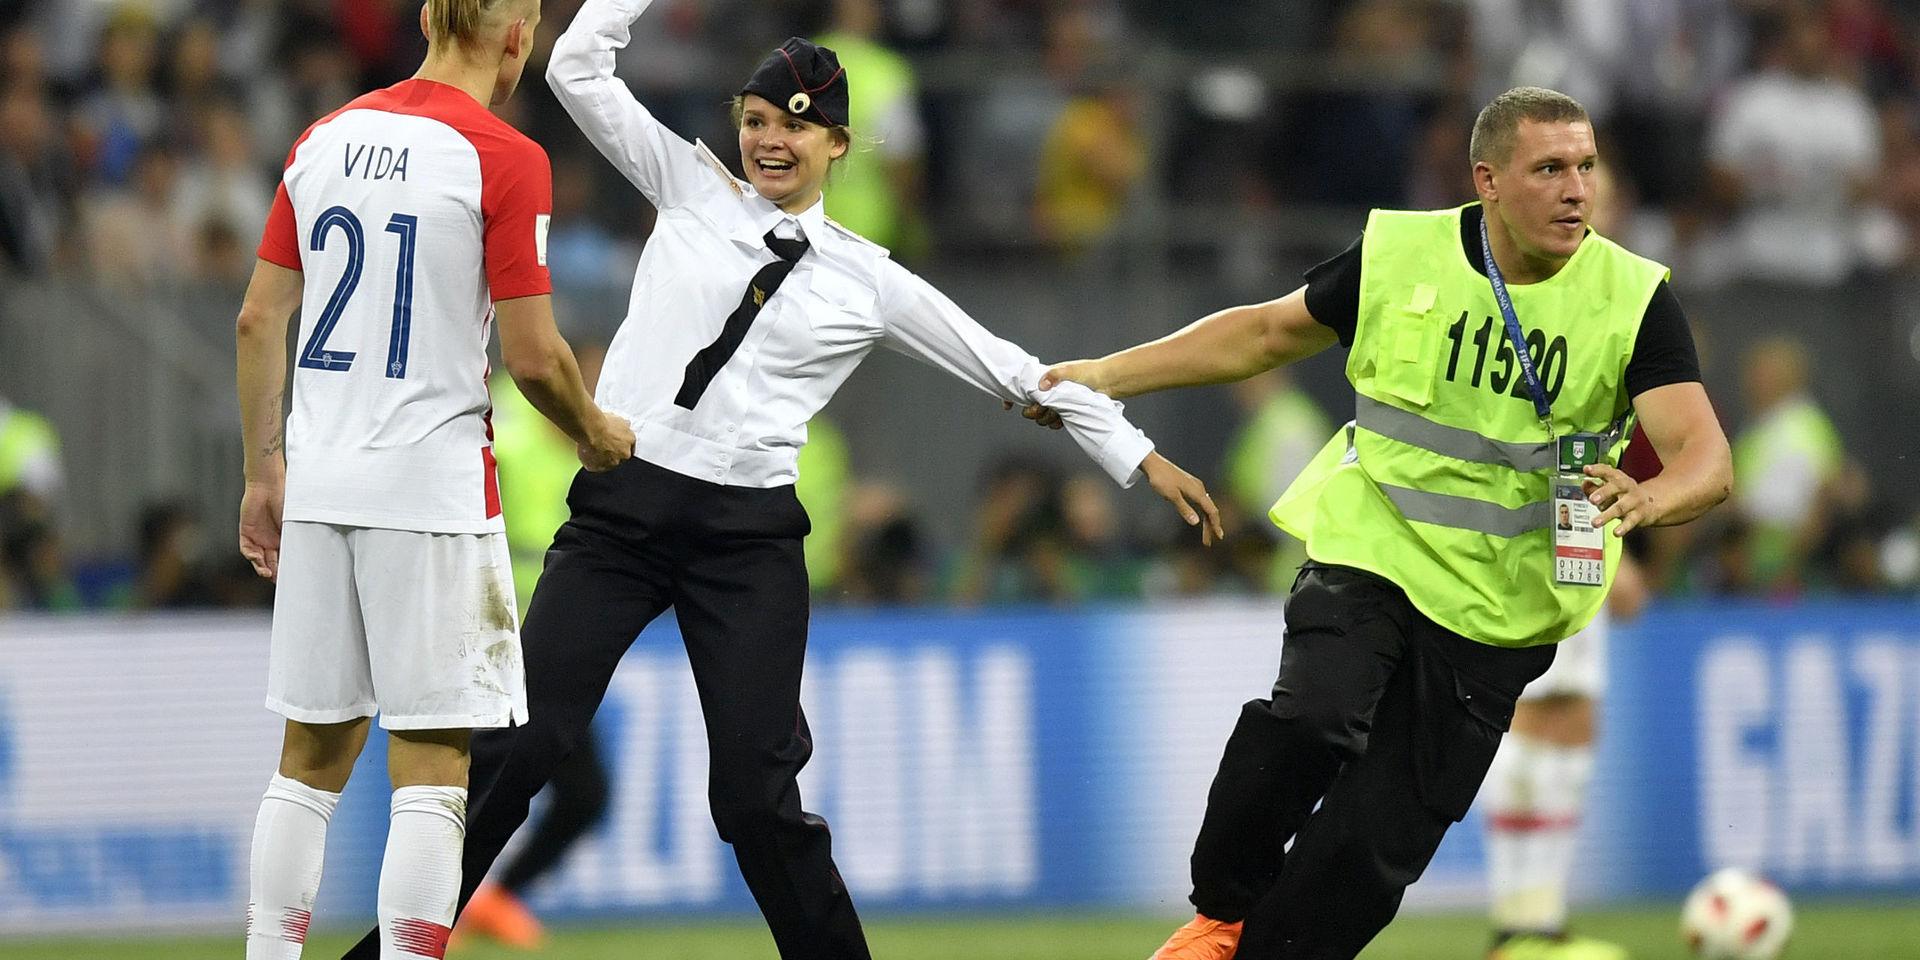 Fyra medlemmar av Pussy riot sprang in på planen klädda som poliser under fotbolls-VM i Ryssland 2018 under finalmatchen mellan Frankrike och Kroatien.